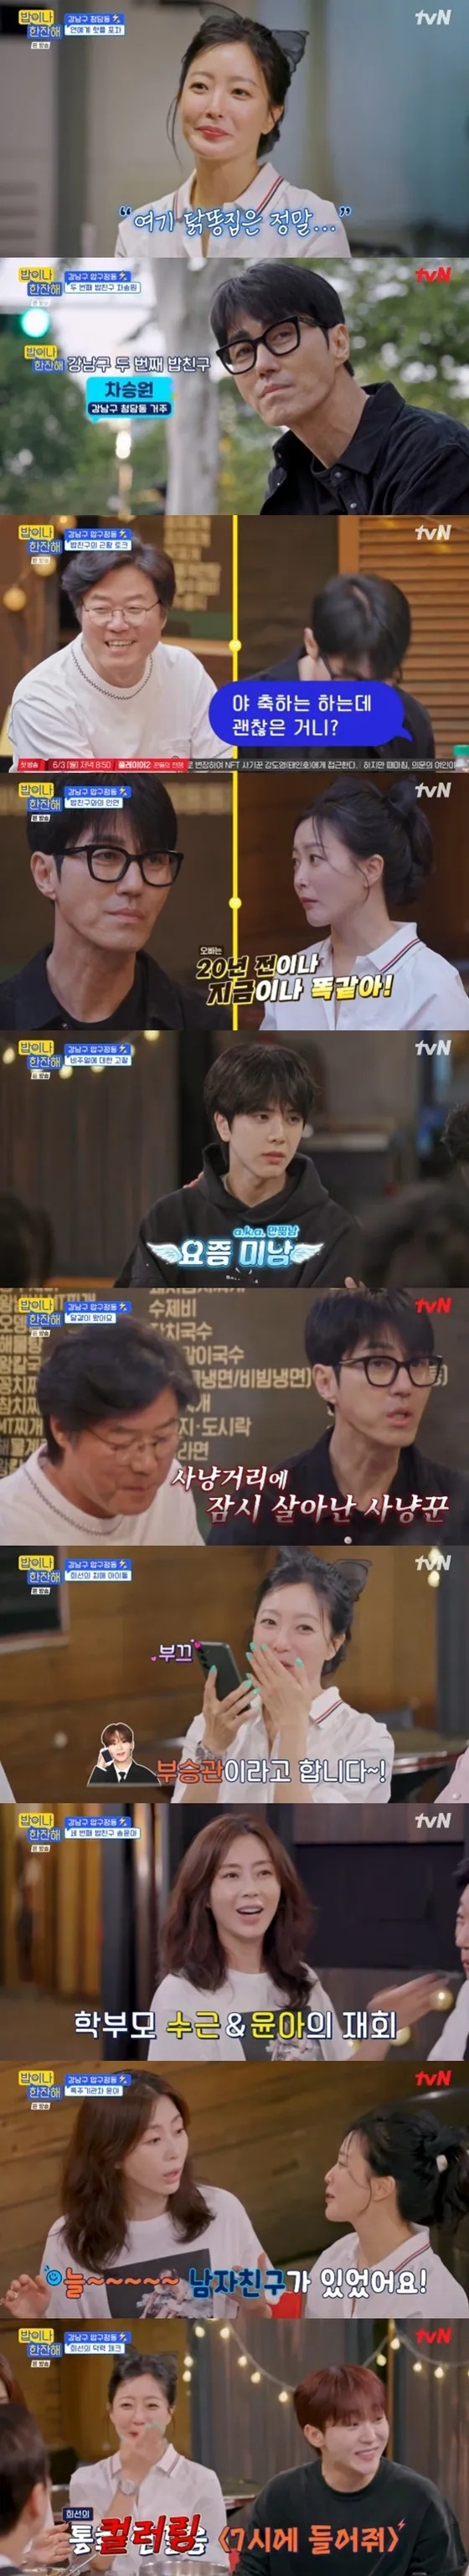 tvN 예능 ‘밥이나 한잔해’ 캡처